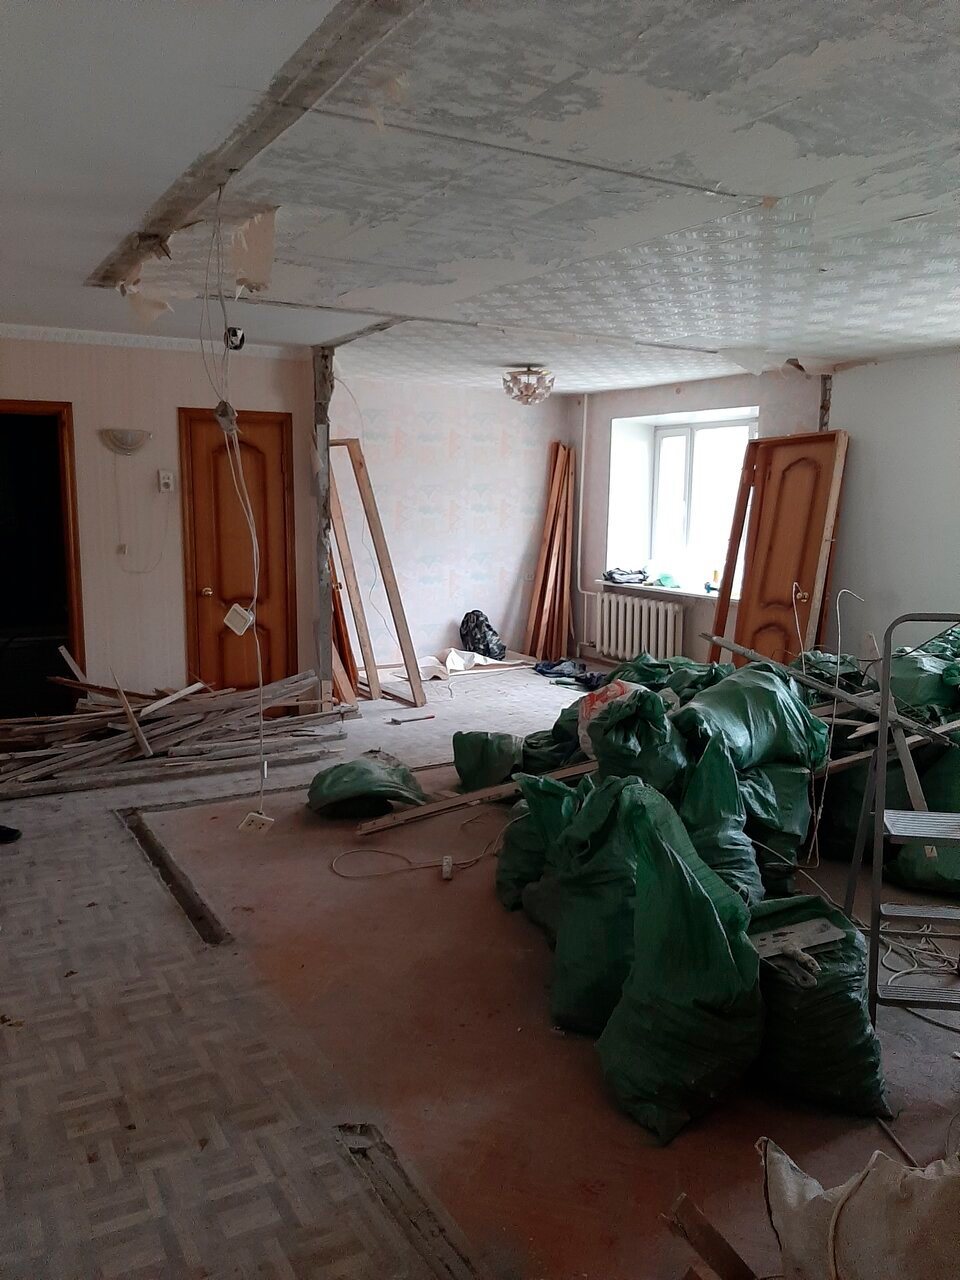 Фото отзыва ремонта квартиры от  Александра номер 2